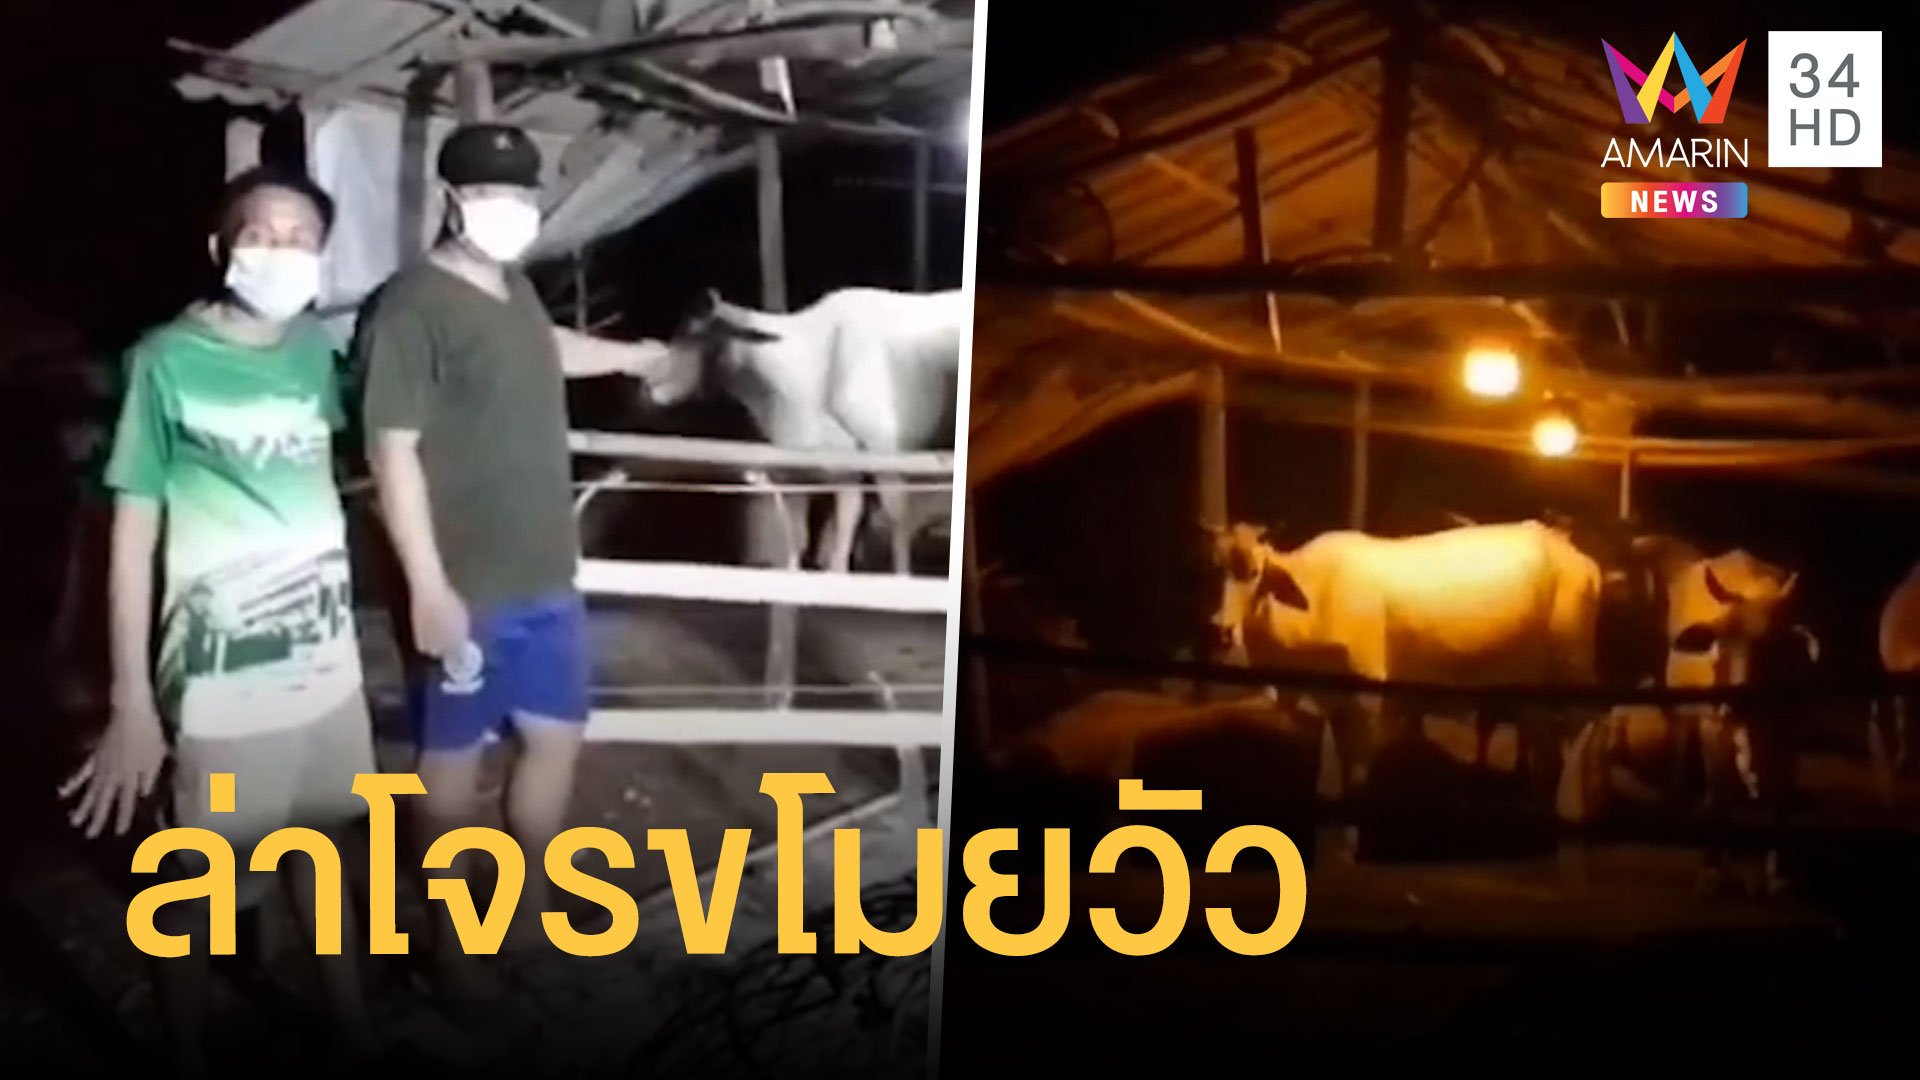 ชาวบ้านโวย โจรขโมยวัวอาละวาด หายนับ 10 ตัว | ข่าวเที่ยงอมรินทร์ | 21 ก.พ. 65 | AMARIN TVHD34